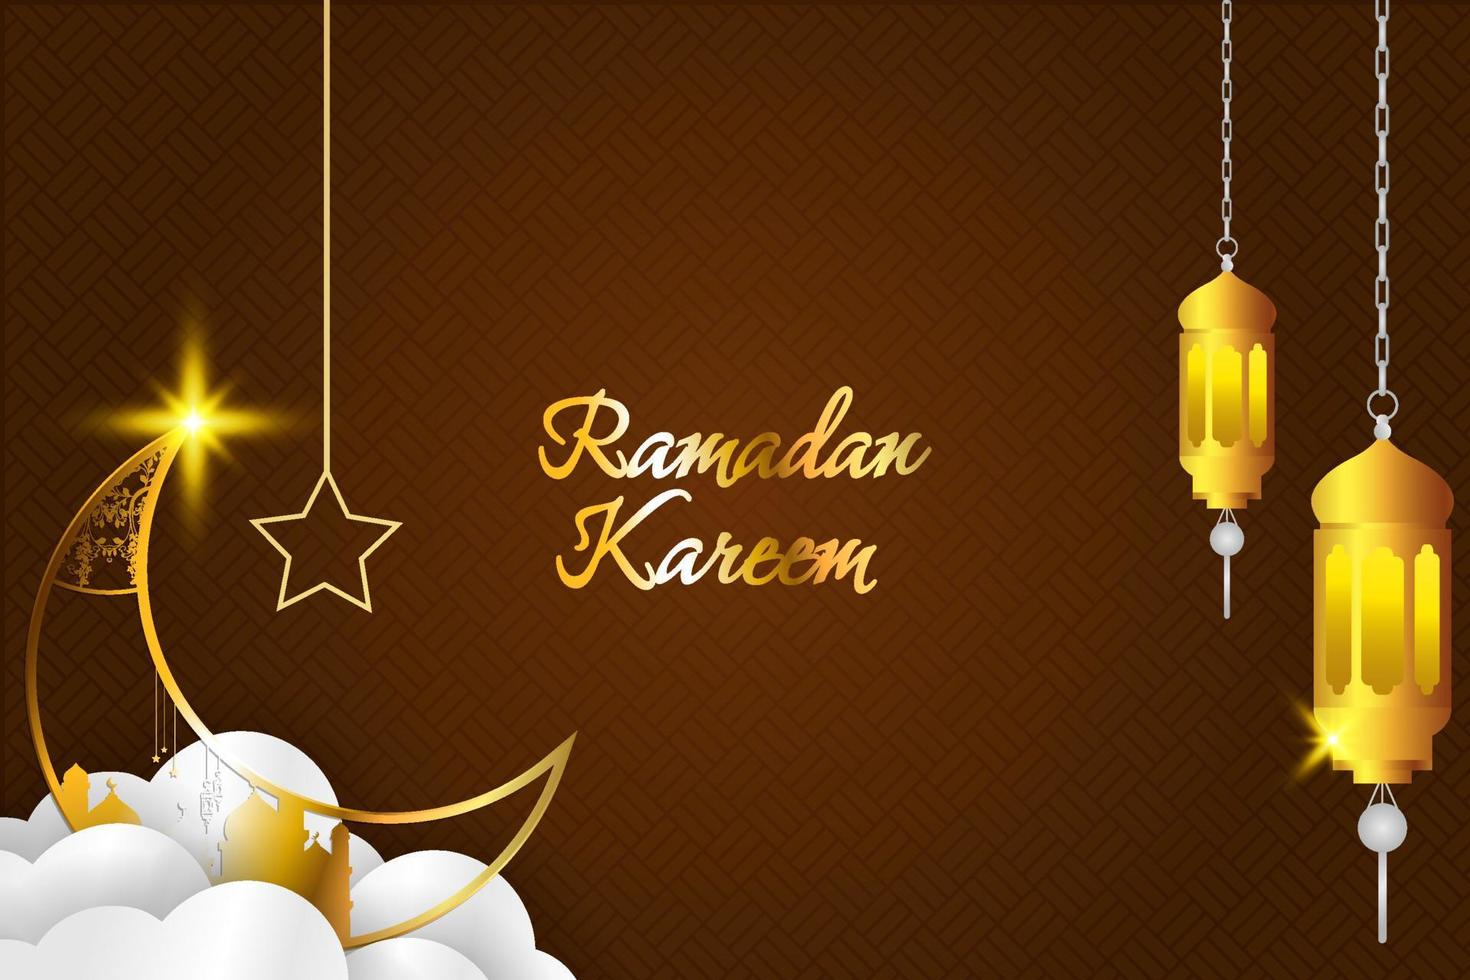 hintergrund ramadan kareem islamischen stil mit element und brauner farbe vektor